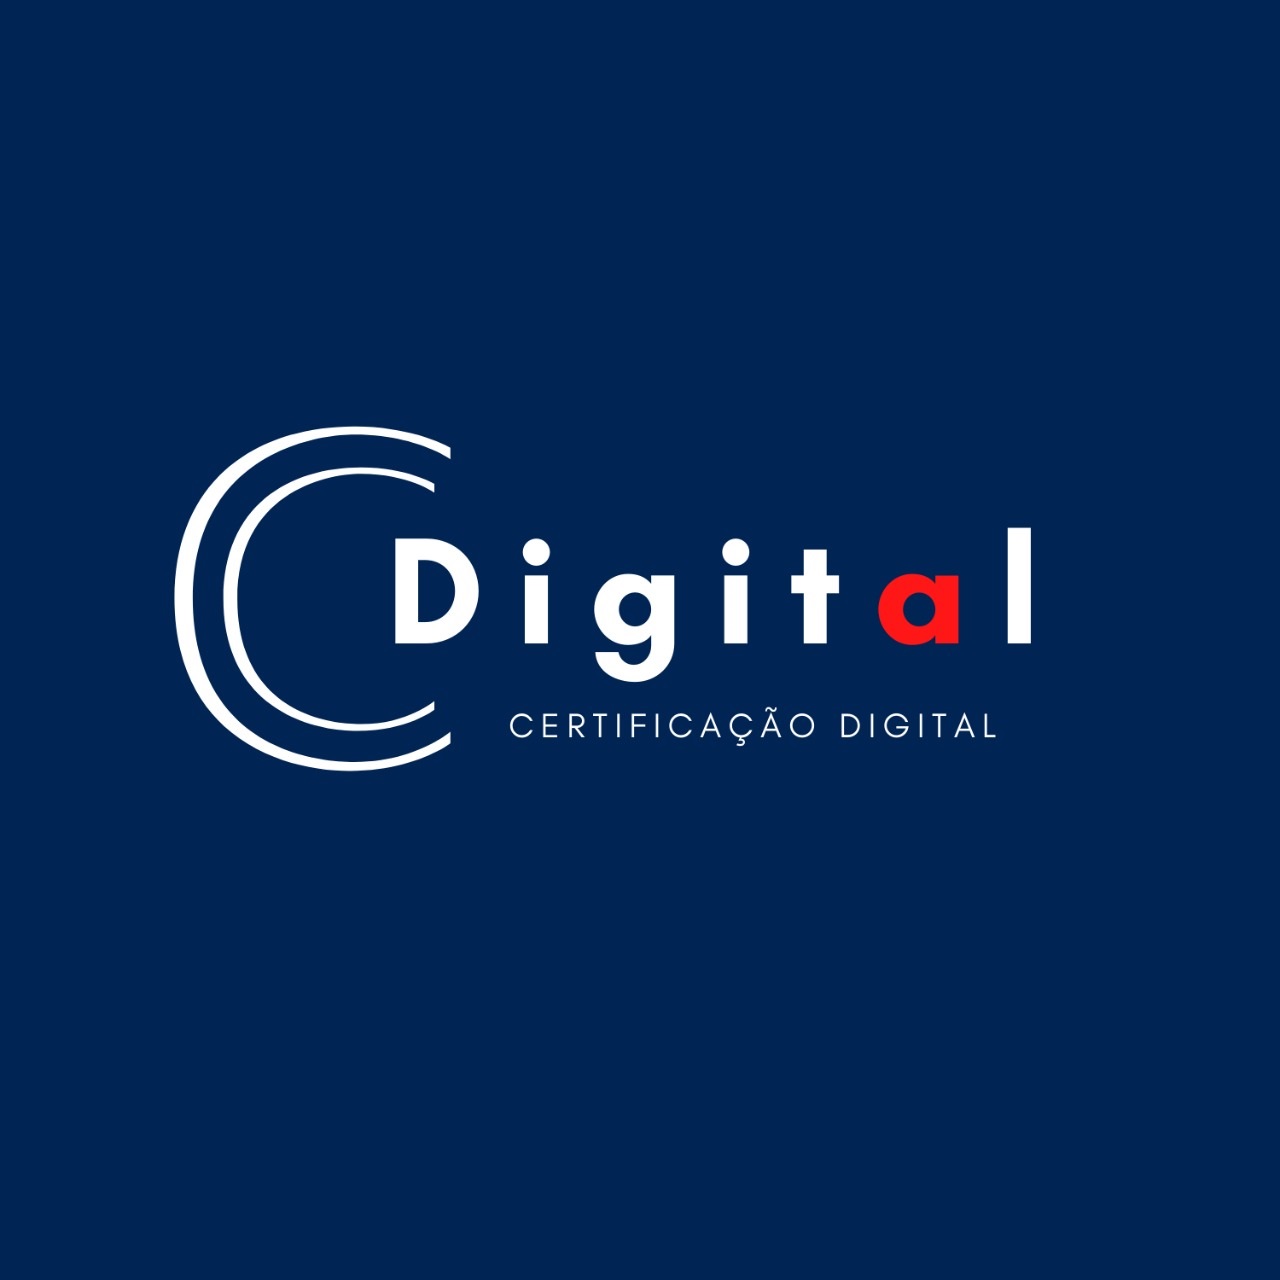 Logotipo do parceiro AR Cdigital &#8211; OAB &#8211; 25%